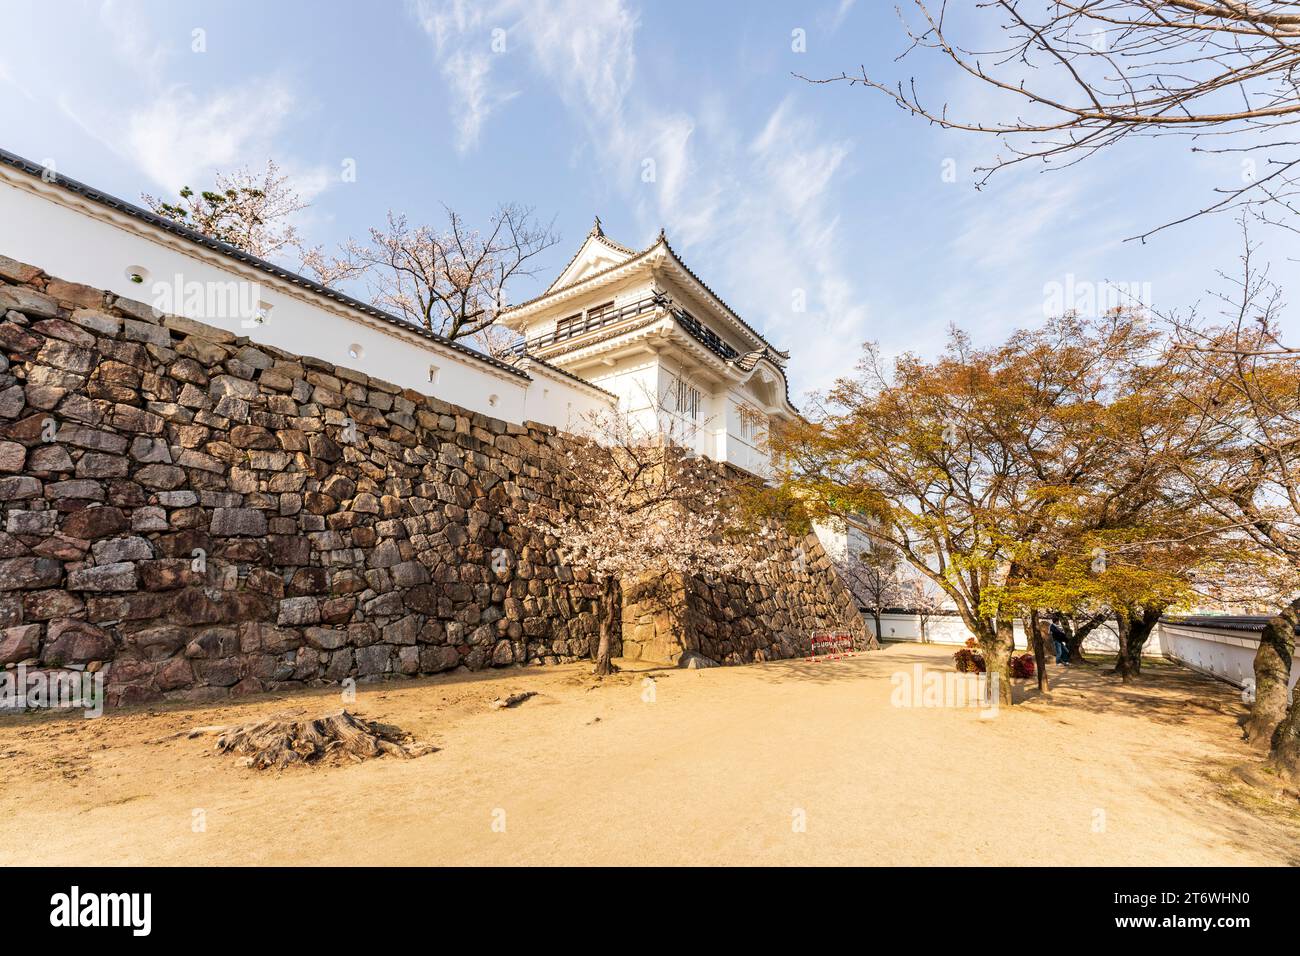 Château japonais, Fukuyama. Mur de pierre Ishigaki avec mur de plâtre dobei et le Tsukimi yagura restauré, tourelle d'observation de la lune. Cerisiers en fleurs, ciel bleu Banque D'Images